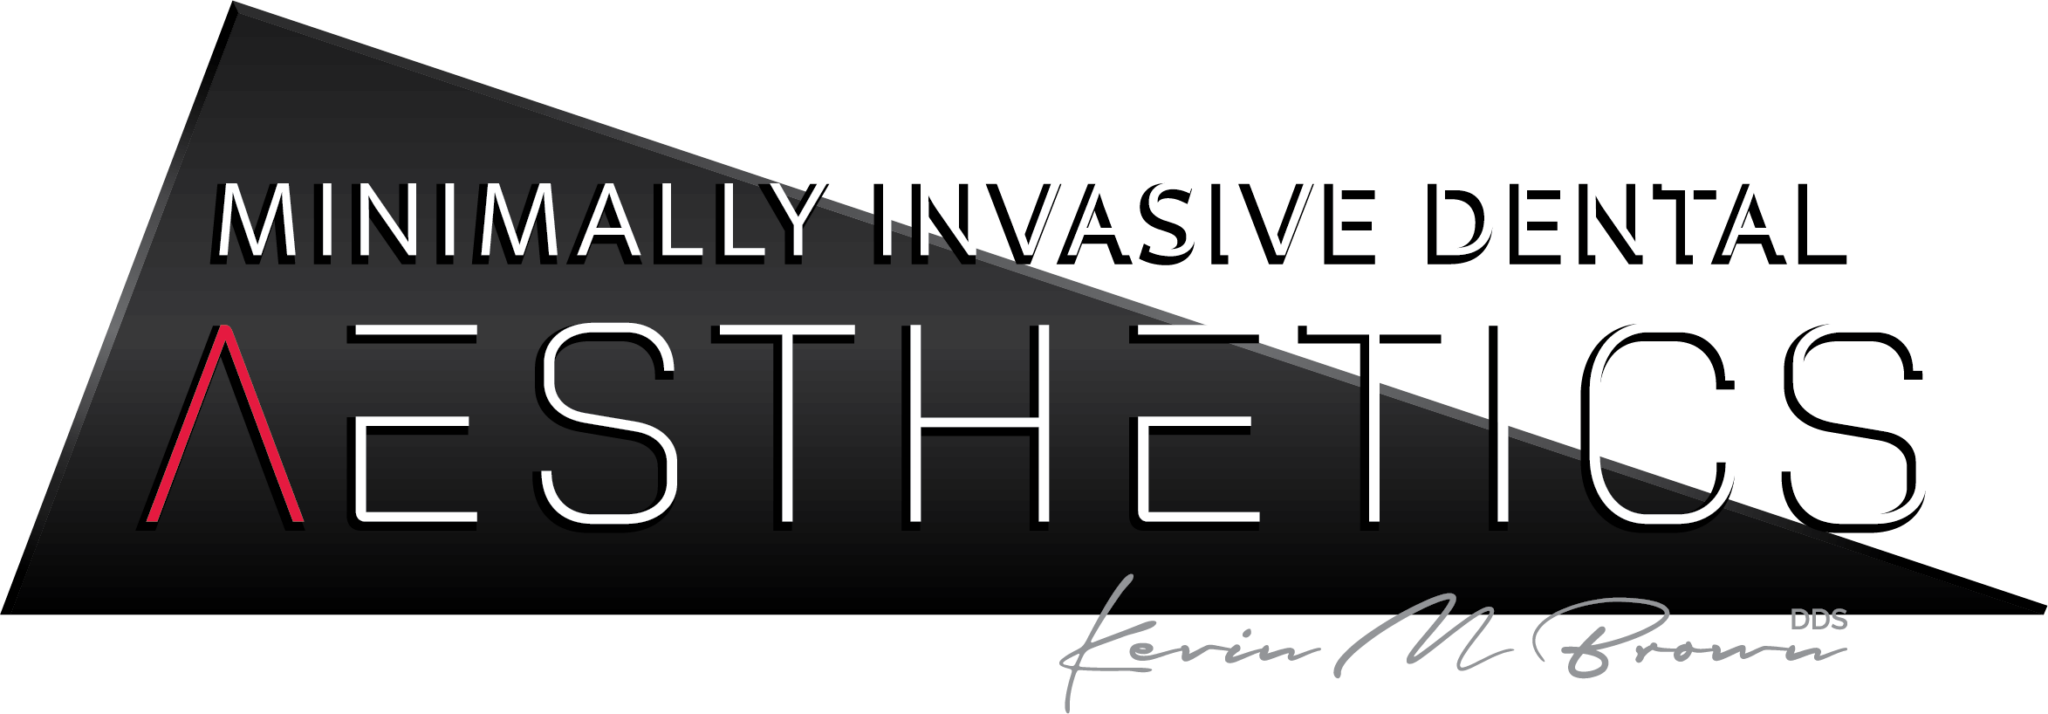 Minimally Invasive Aesthetics - logo